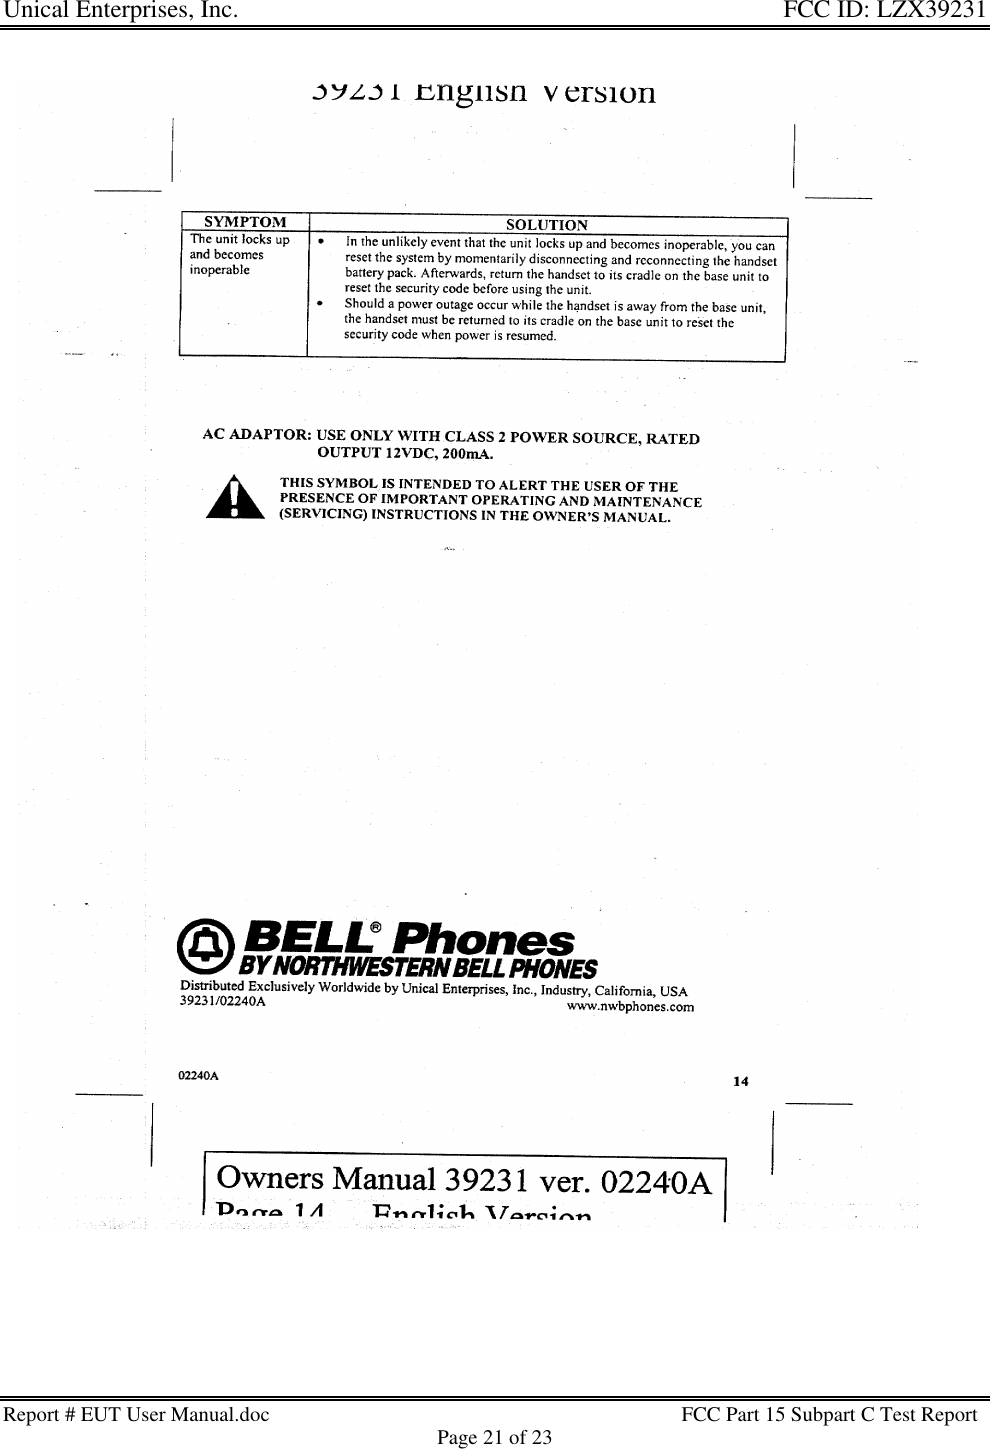 Unical Enterprises, Inc. FCC ID: LZX39231Report # EUT User Manual.doc FCC Part 15 Subpart C Test ReportPage 21 of 23